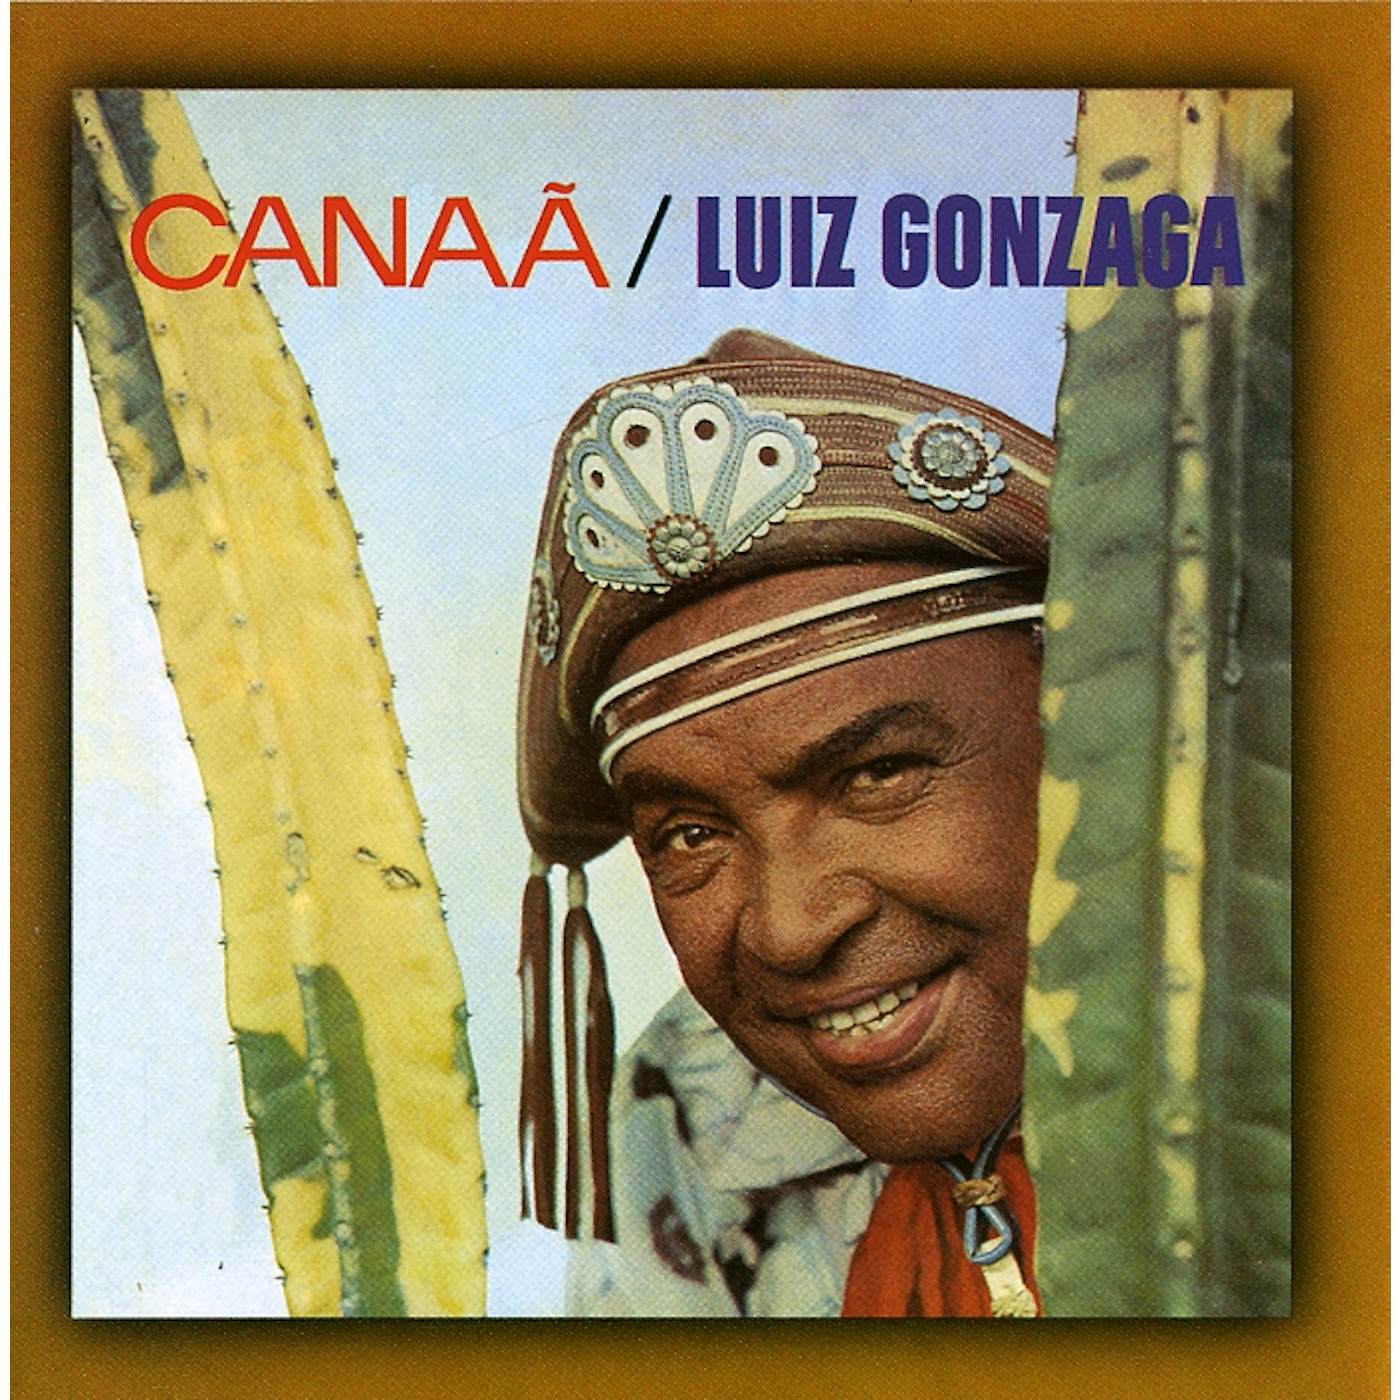 Luiz Gonzaga CANAA CD